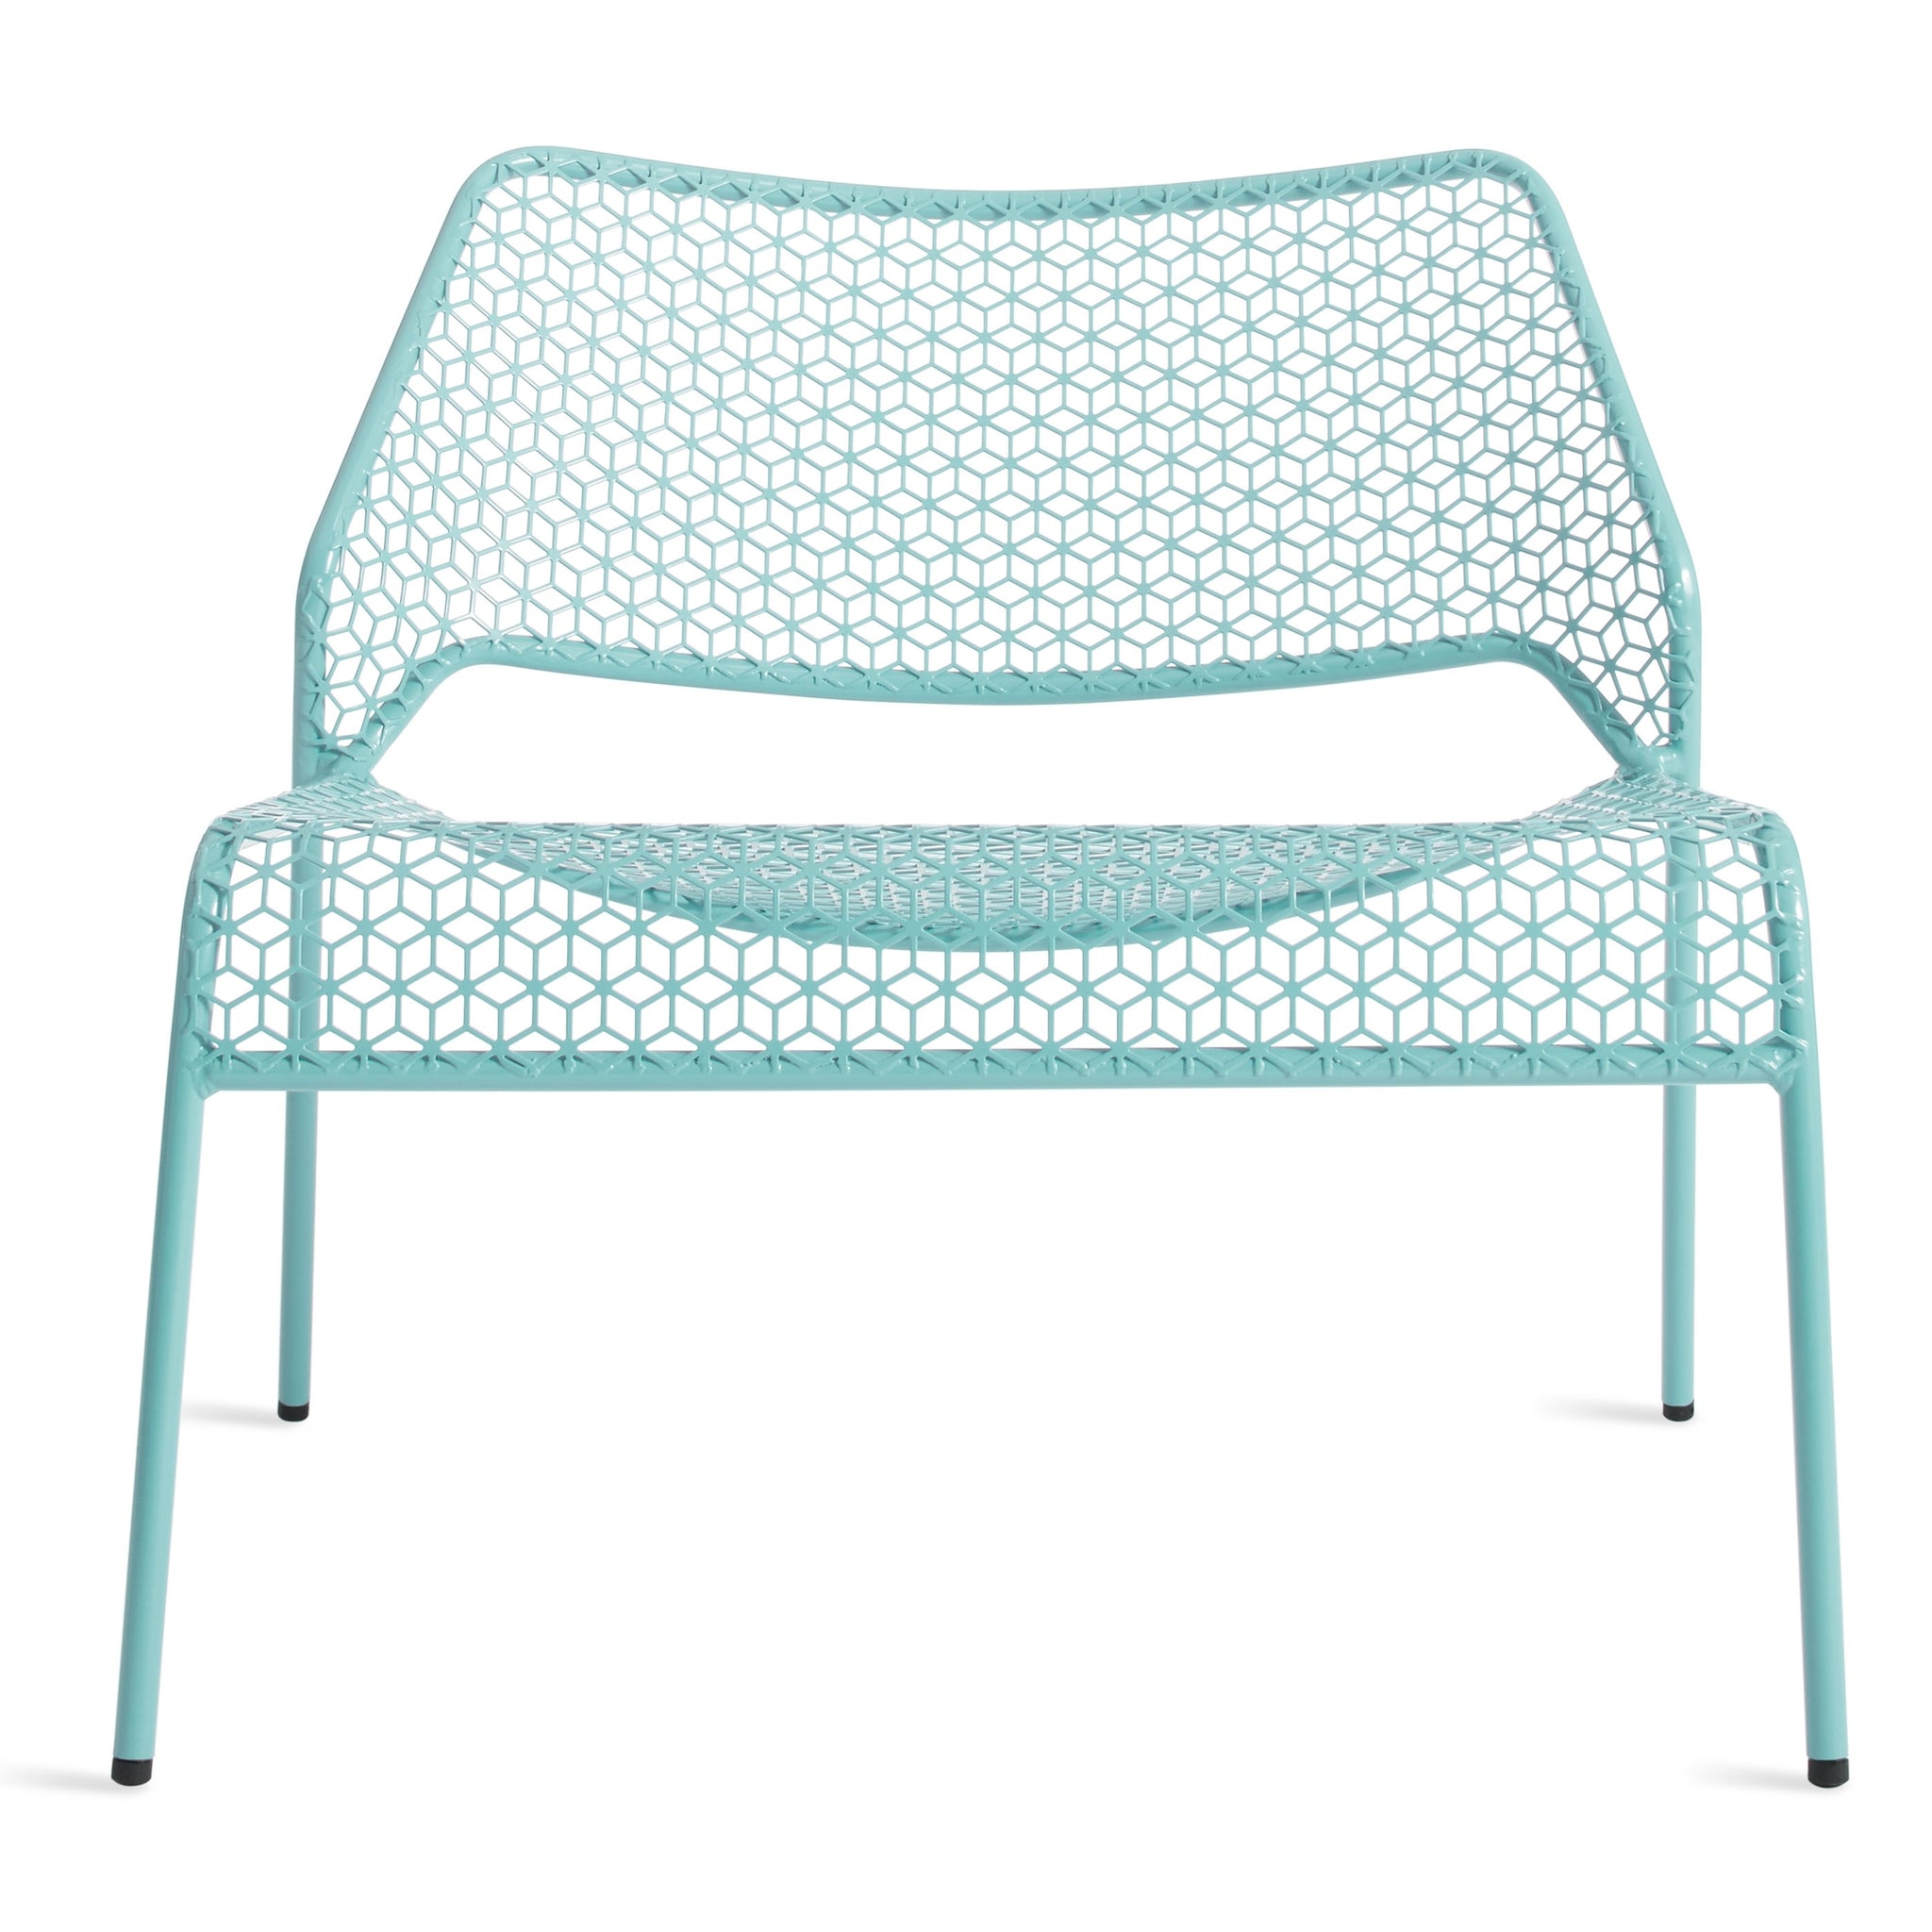 blu dot hot mesh lounge chair aqua 